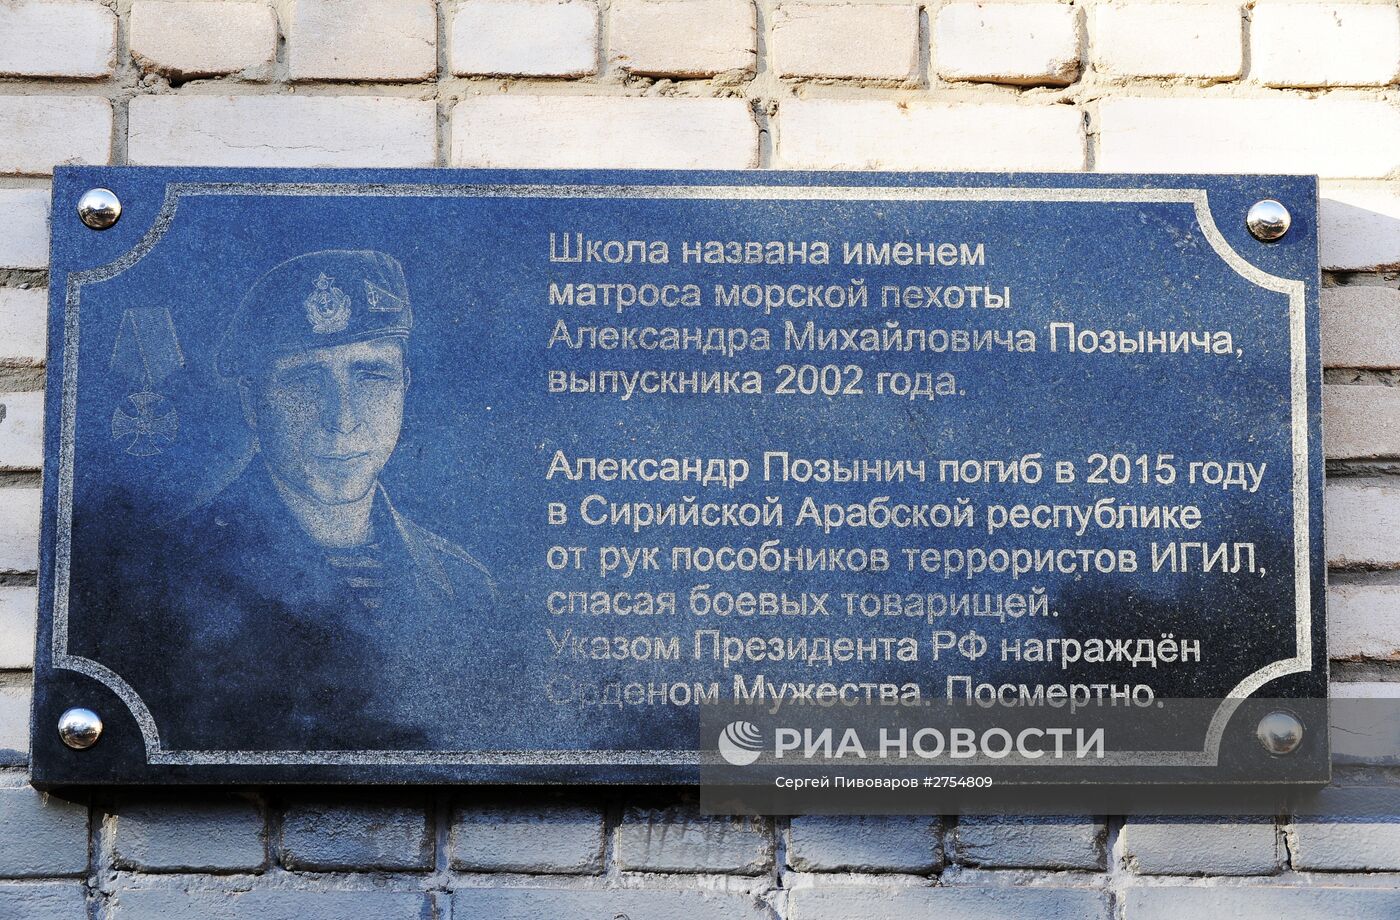 Открытие мемориальной доски в честь морского пехотинца Александра Позынича